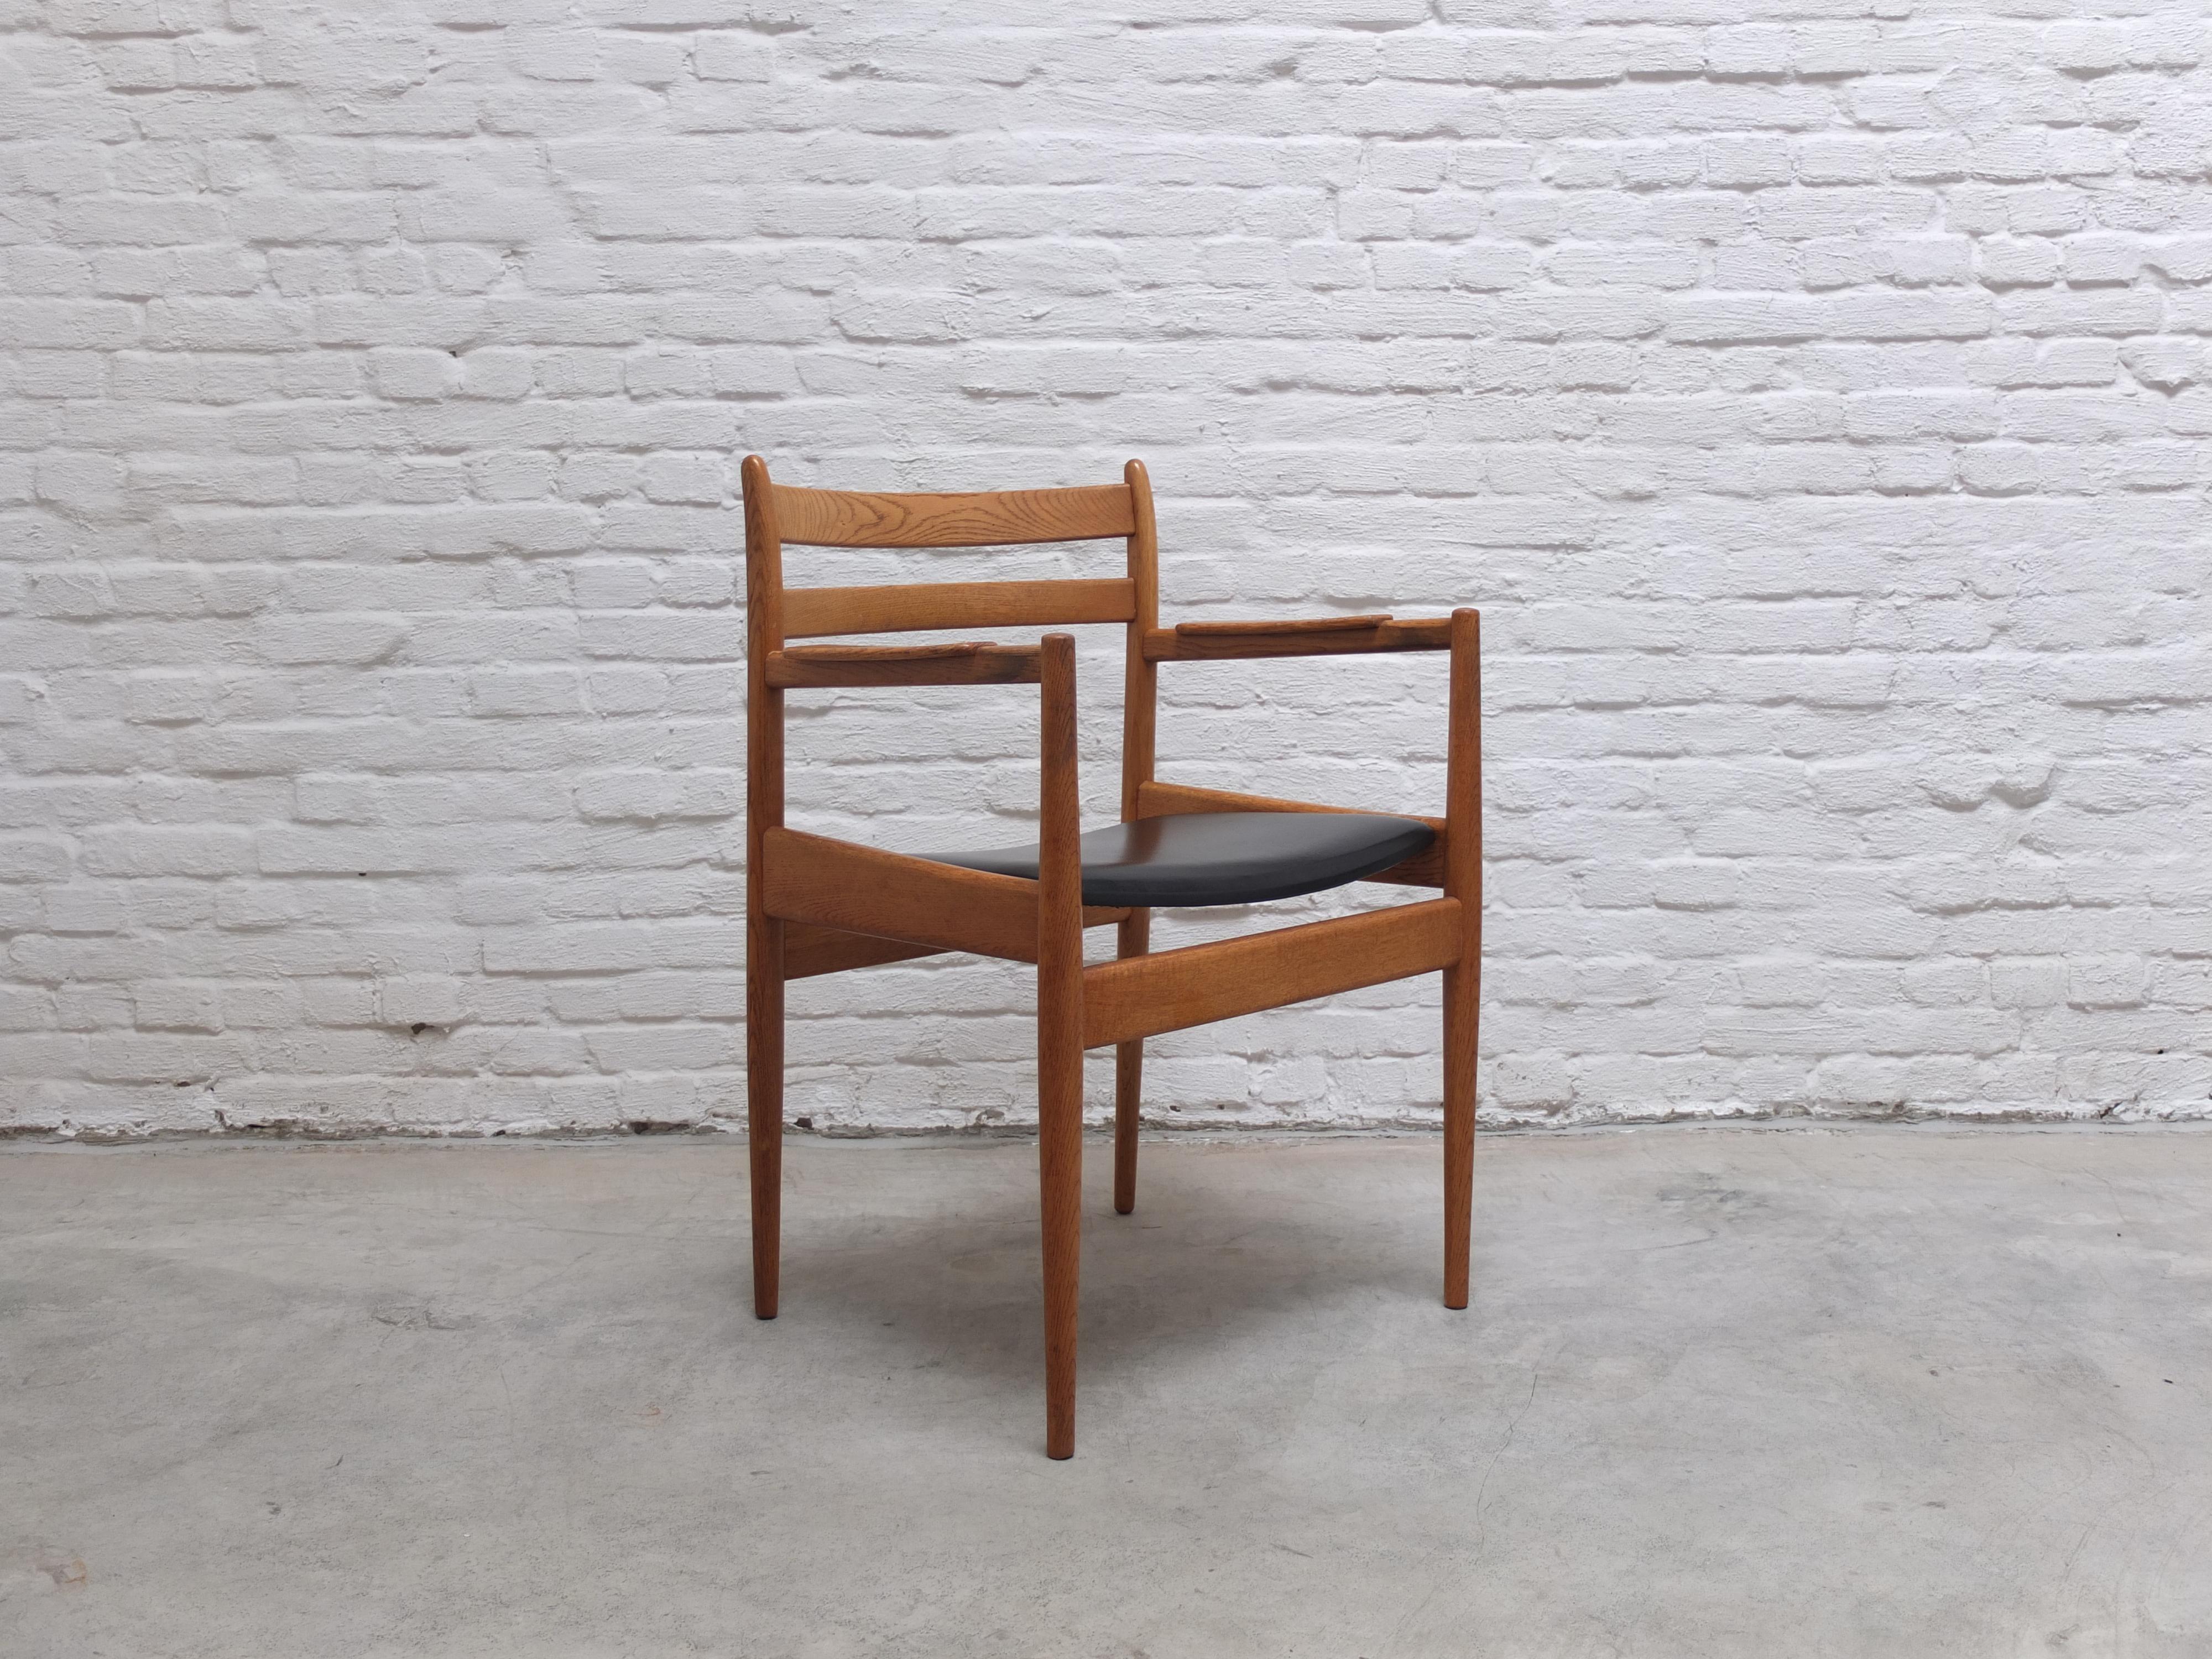 Rare fauteuil ou chaise de bureau en chêne massif de la série 'Abtracta' conçue par Jos De Mey pour Van Den Berghe-Pauvers dans les années 1960. Cette chaise faisait partie d'un bureau qui est également disponible à la vente. Labellisé par le